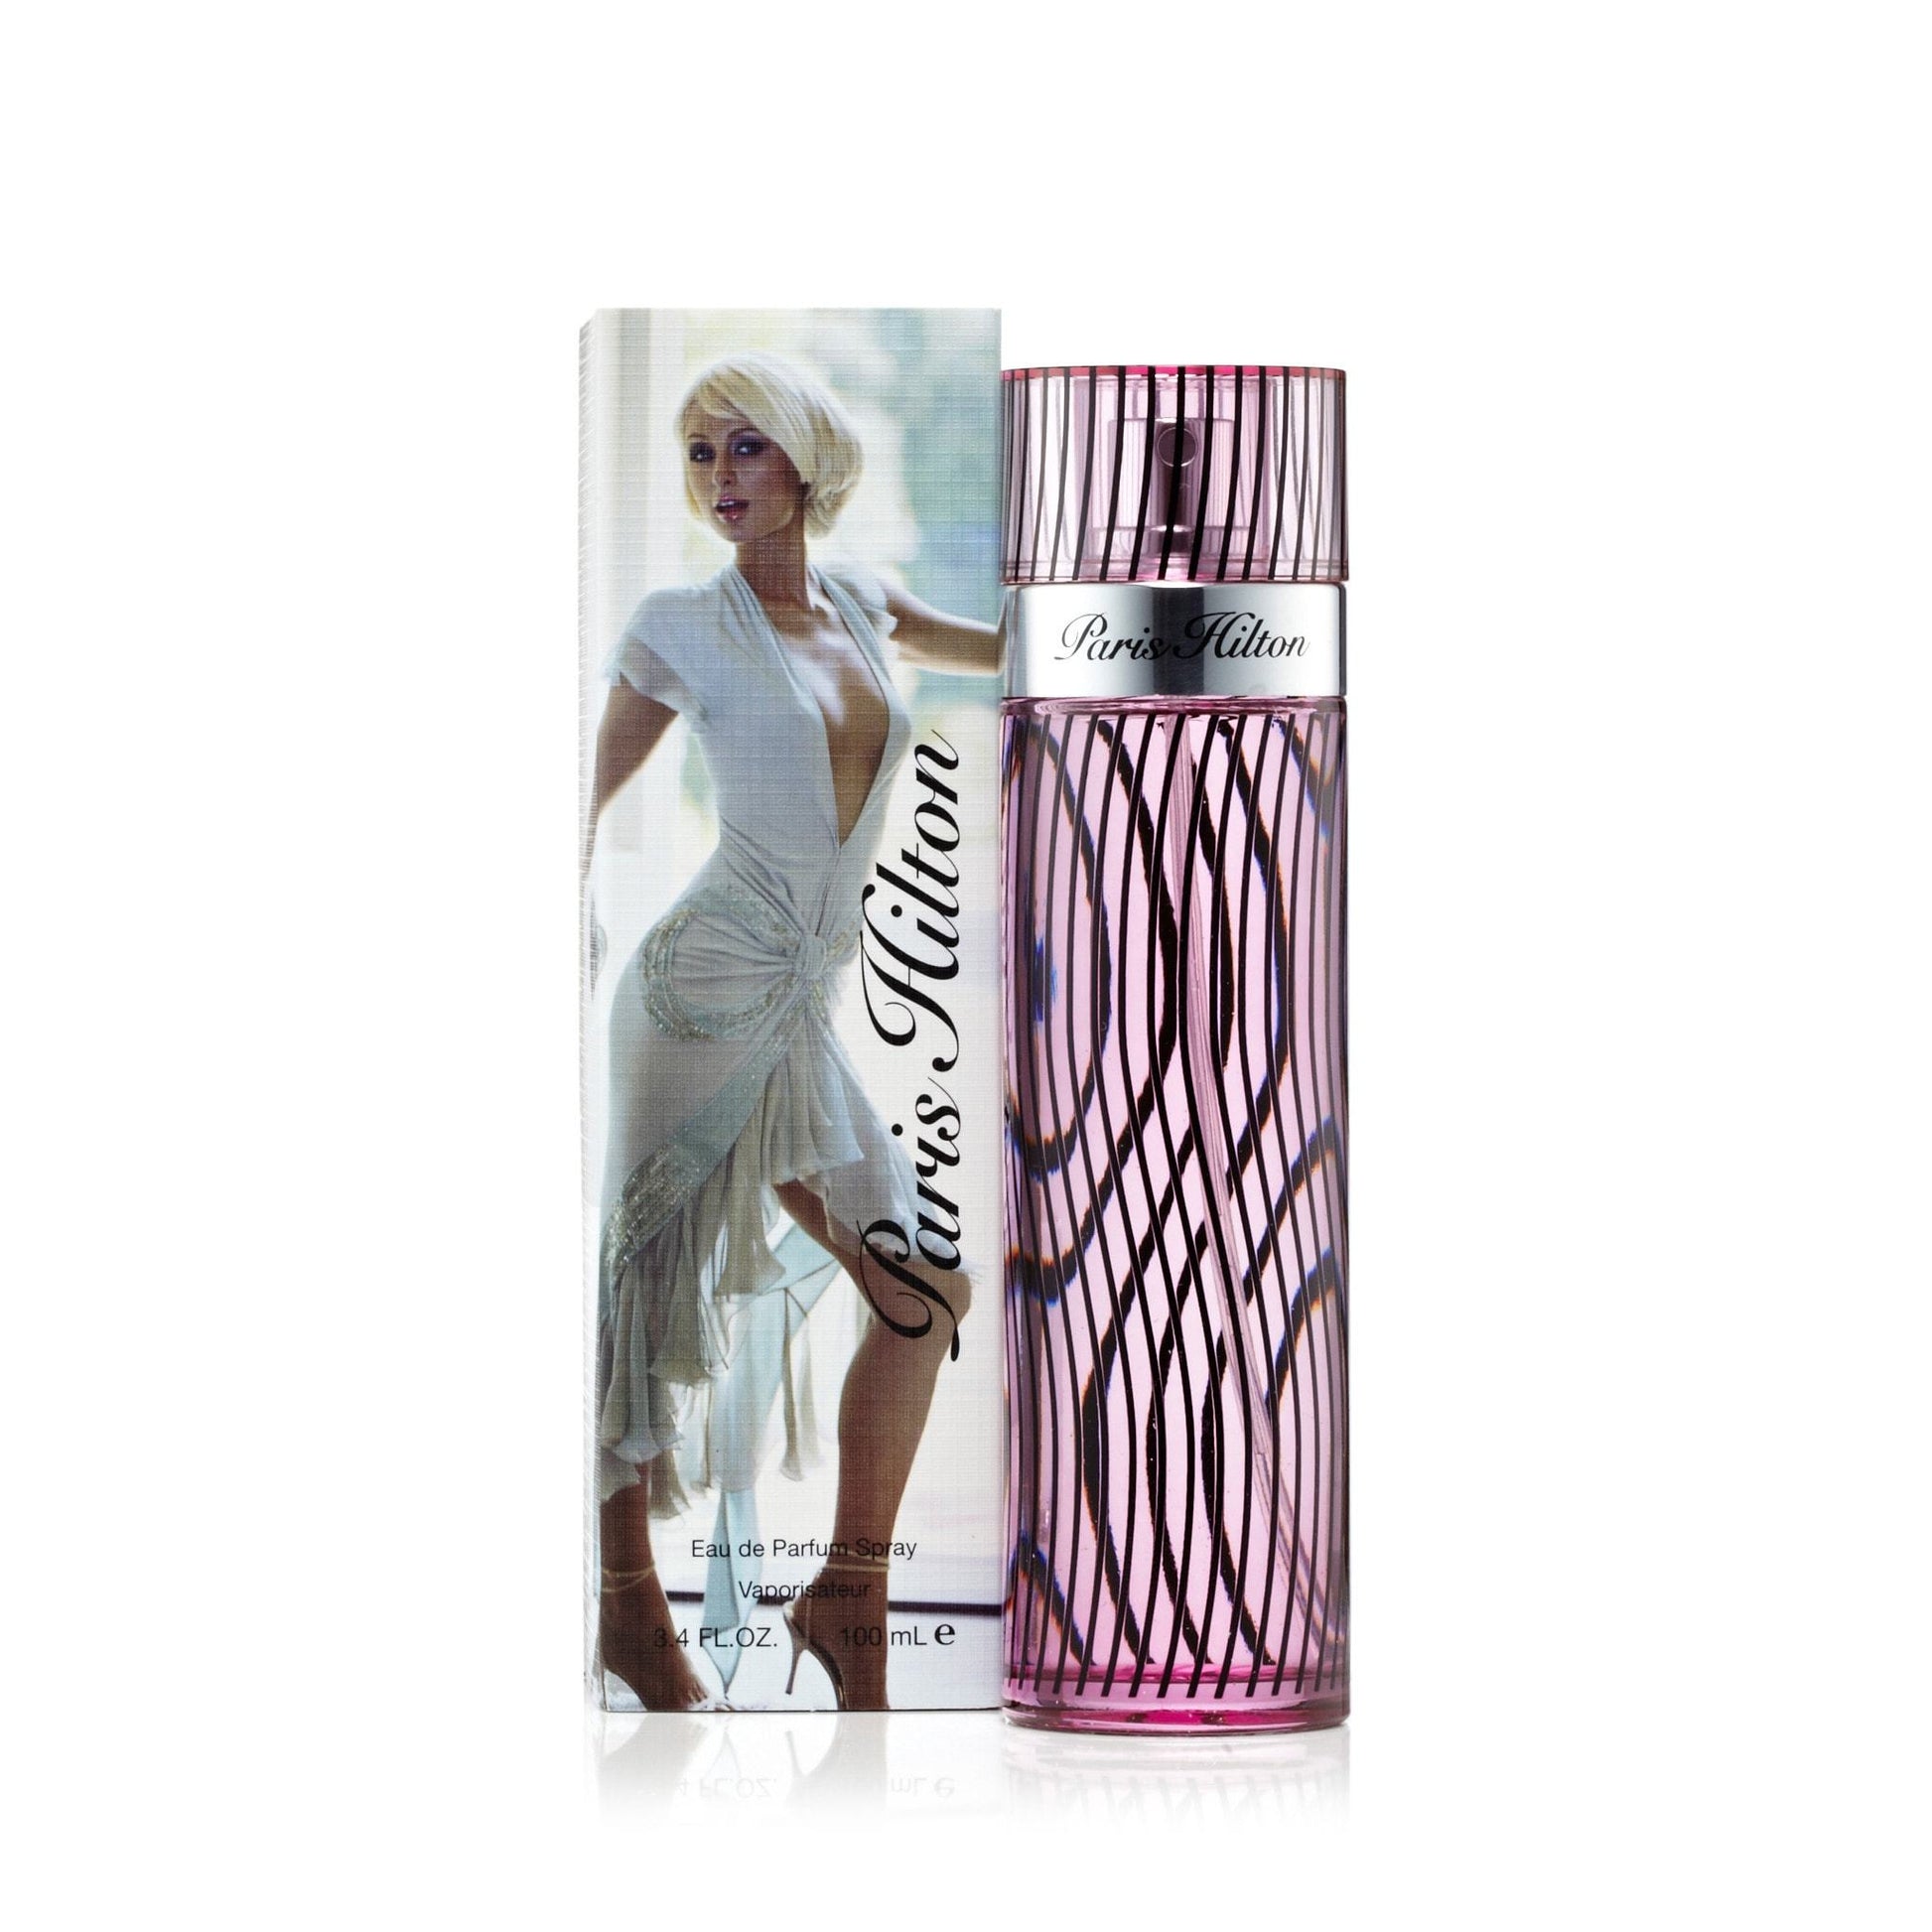 Paris Hilton Eau de Parfum Spray for Women by Paris Hilton, Product image 4